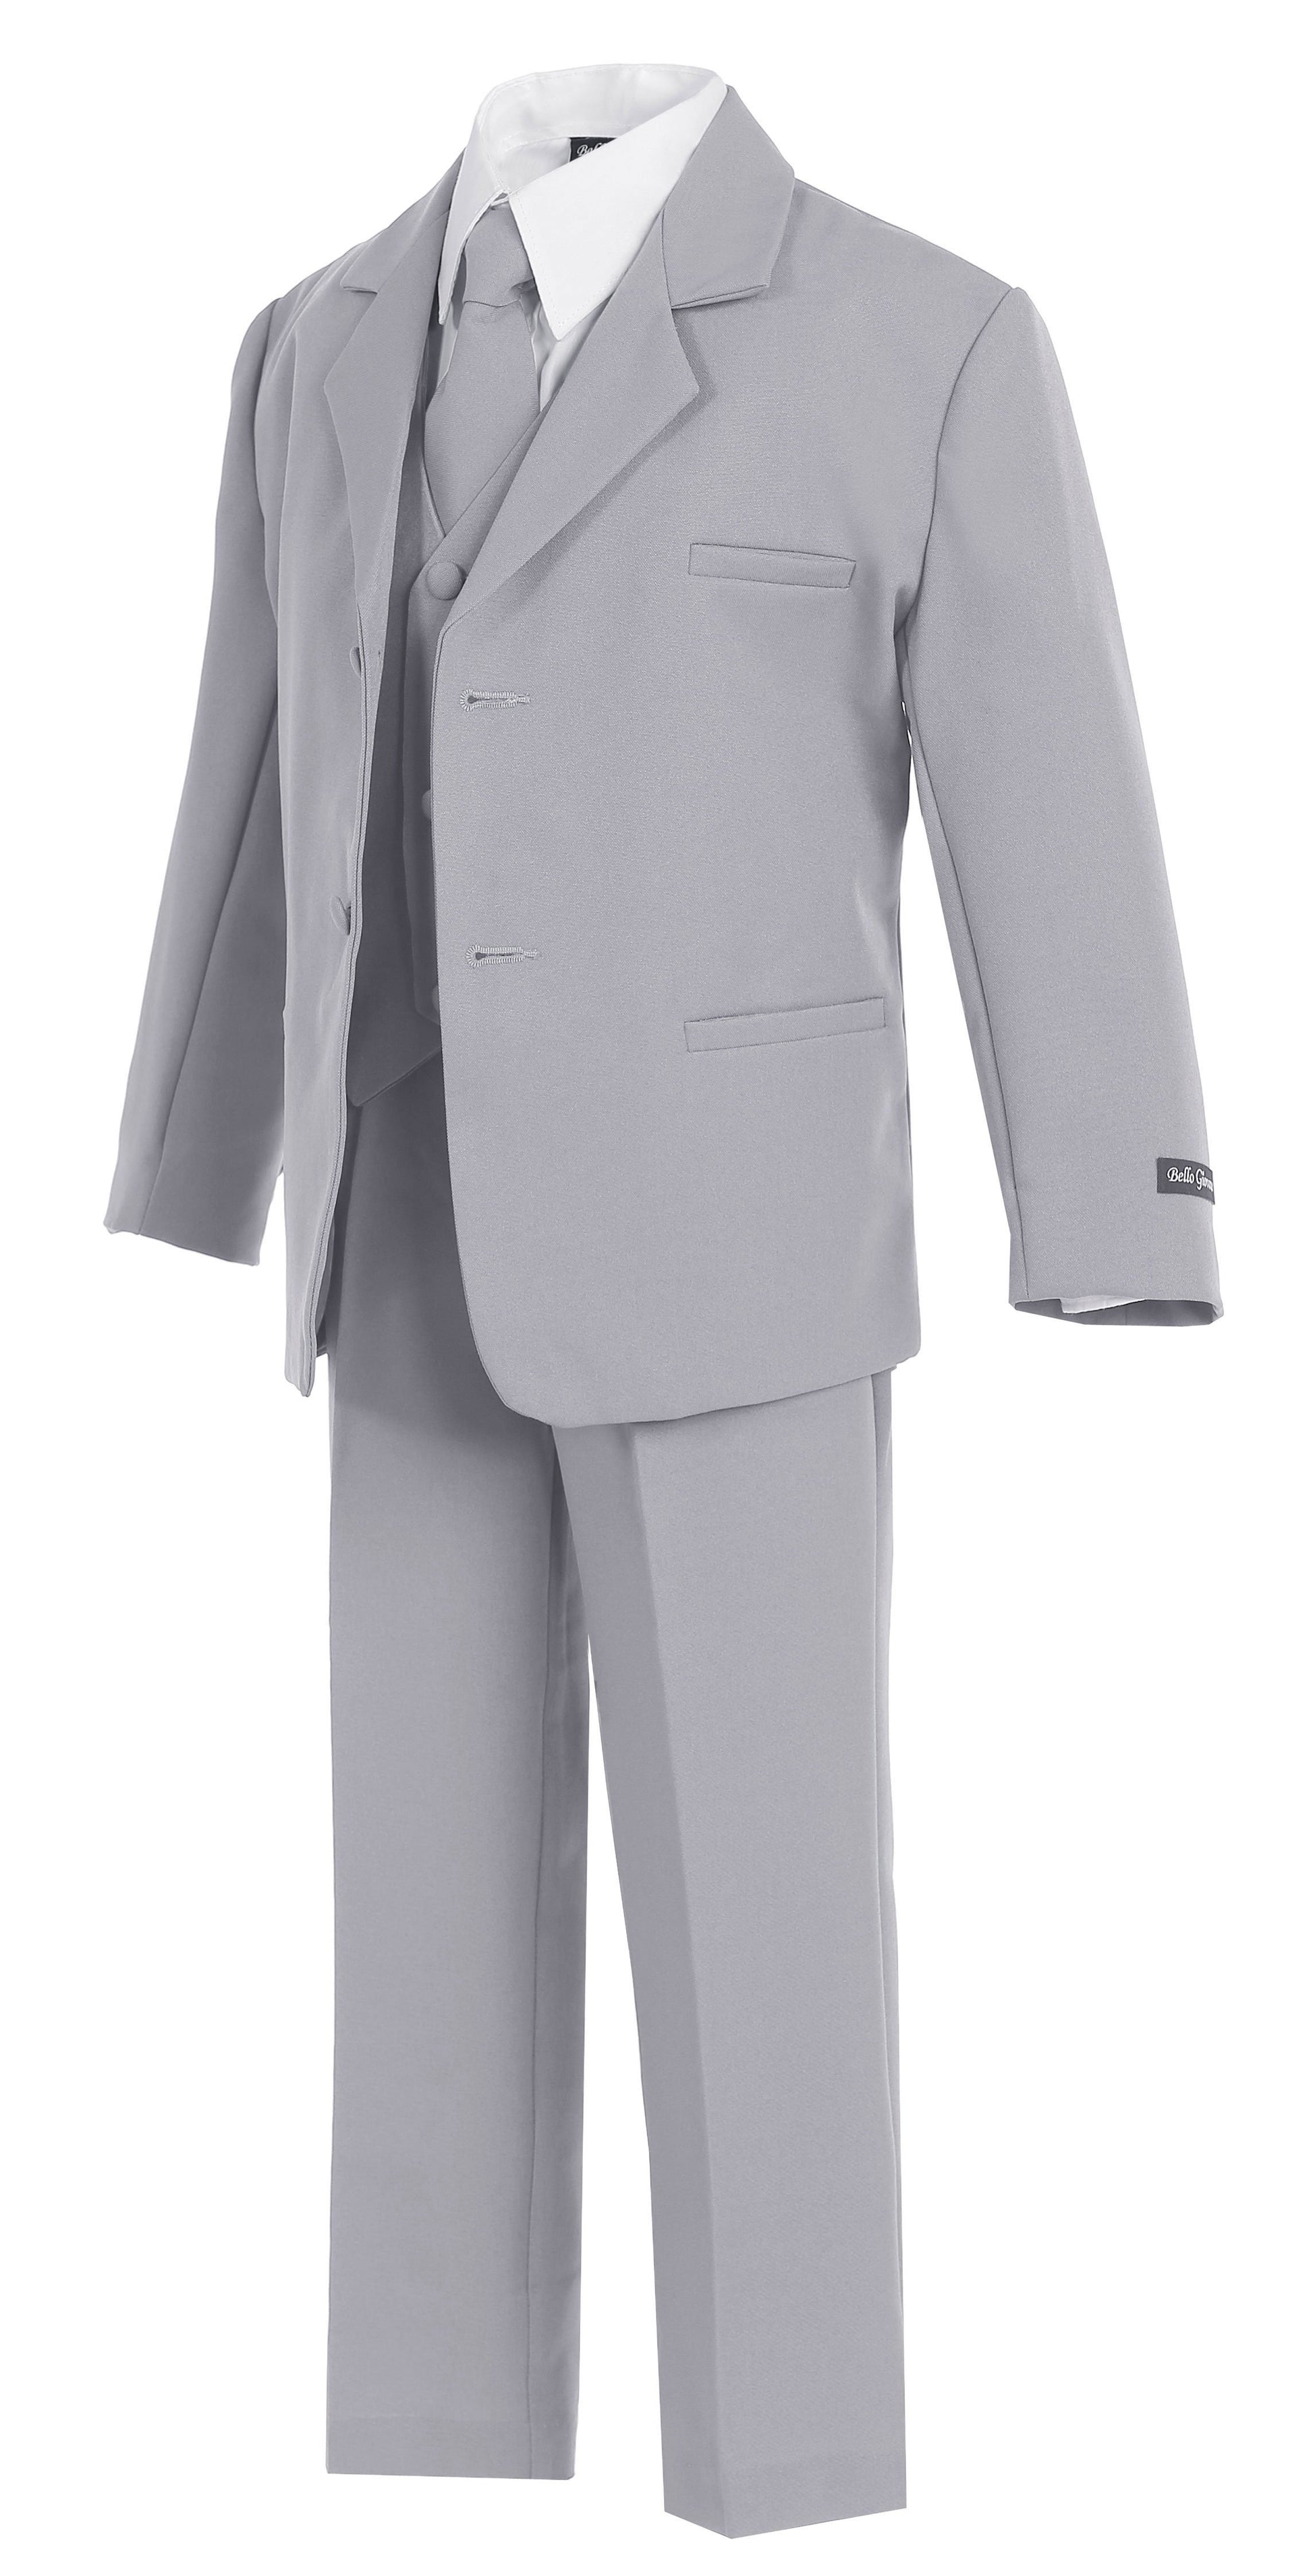 3t grey suit